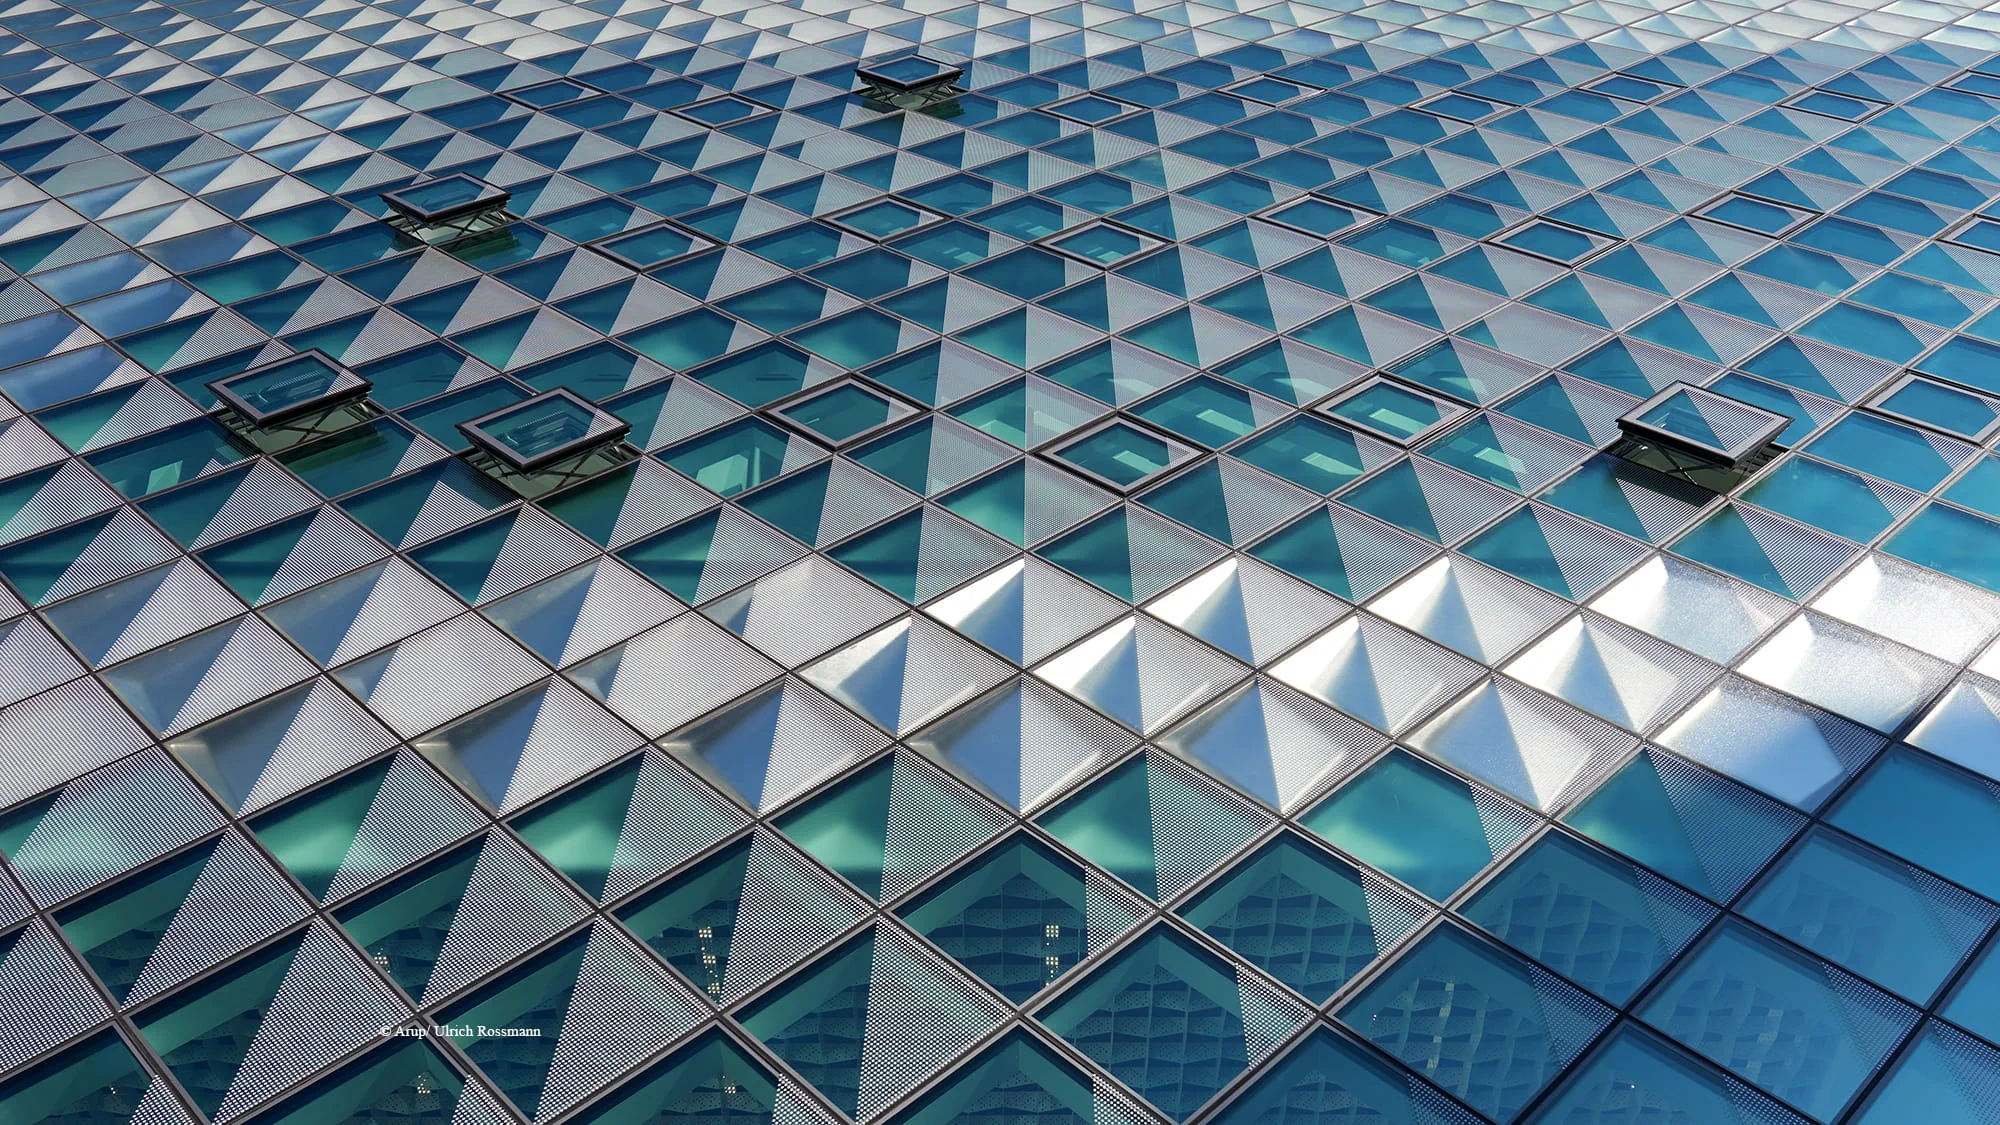 Arup entwickelte gemeinsam mit den Architekten Richter Musikowski und in enger Zusammenarbeit mit der Industrie ein innovatives, modulares Fassadensystem, das aus vorgefertigten Glas-Metallkassetten besteht.